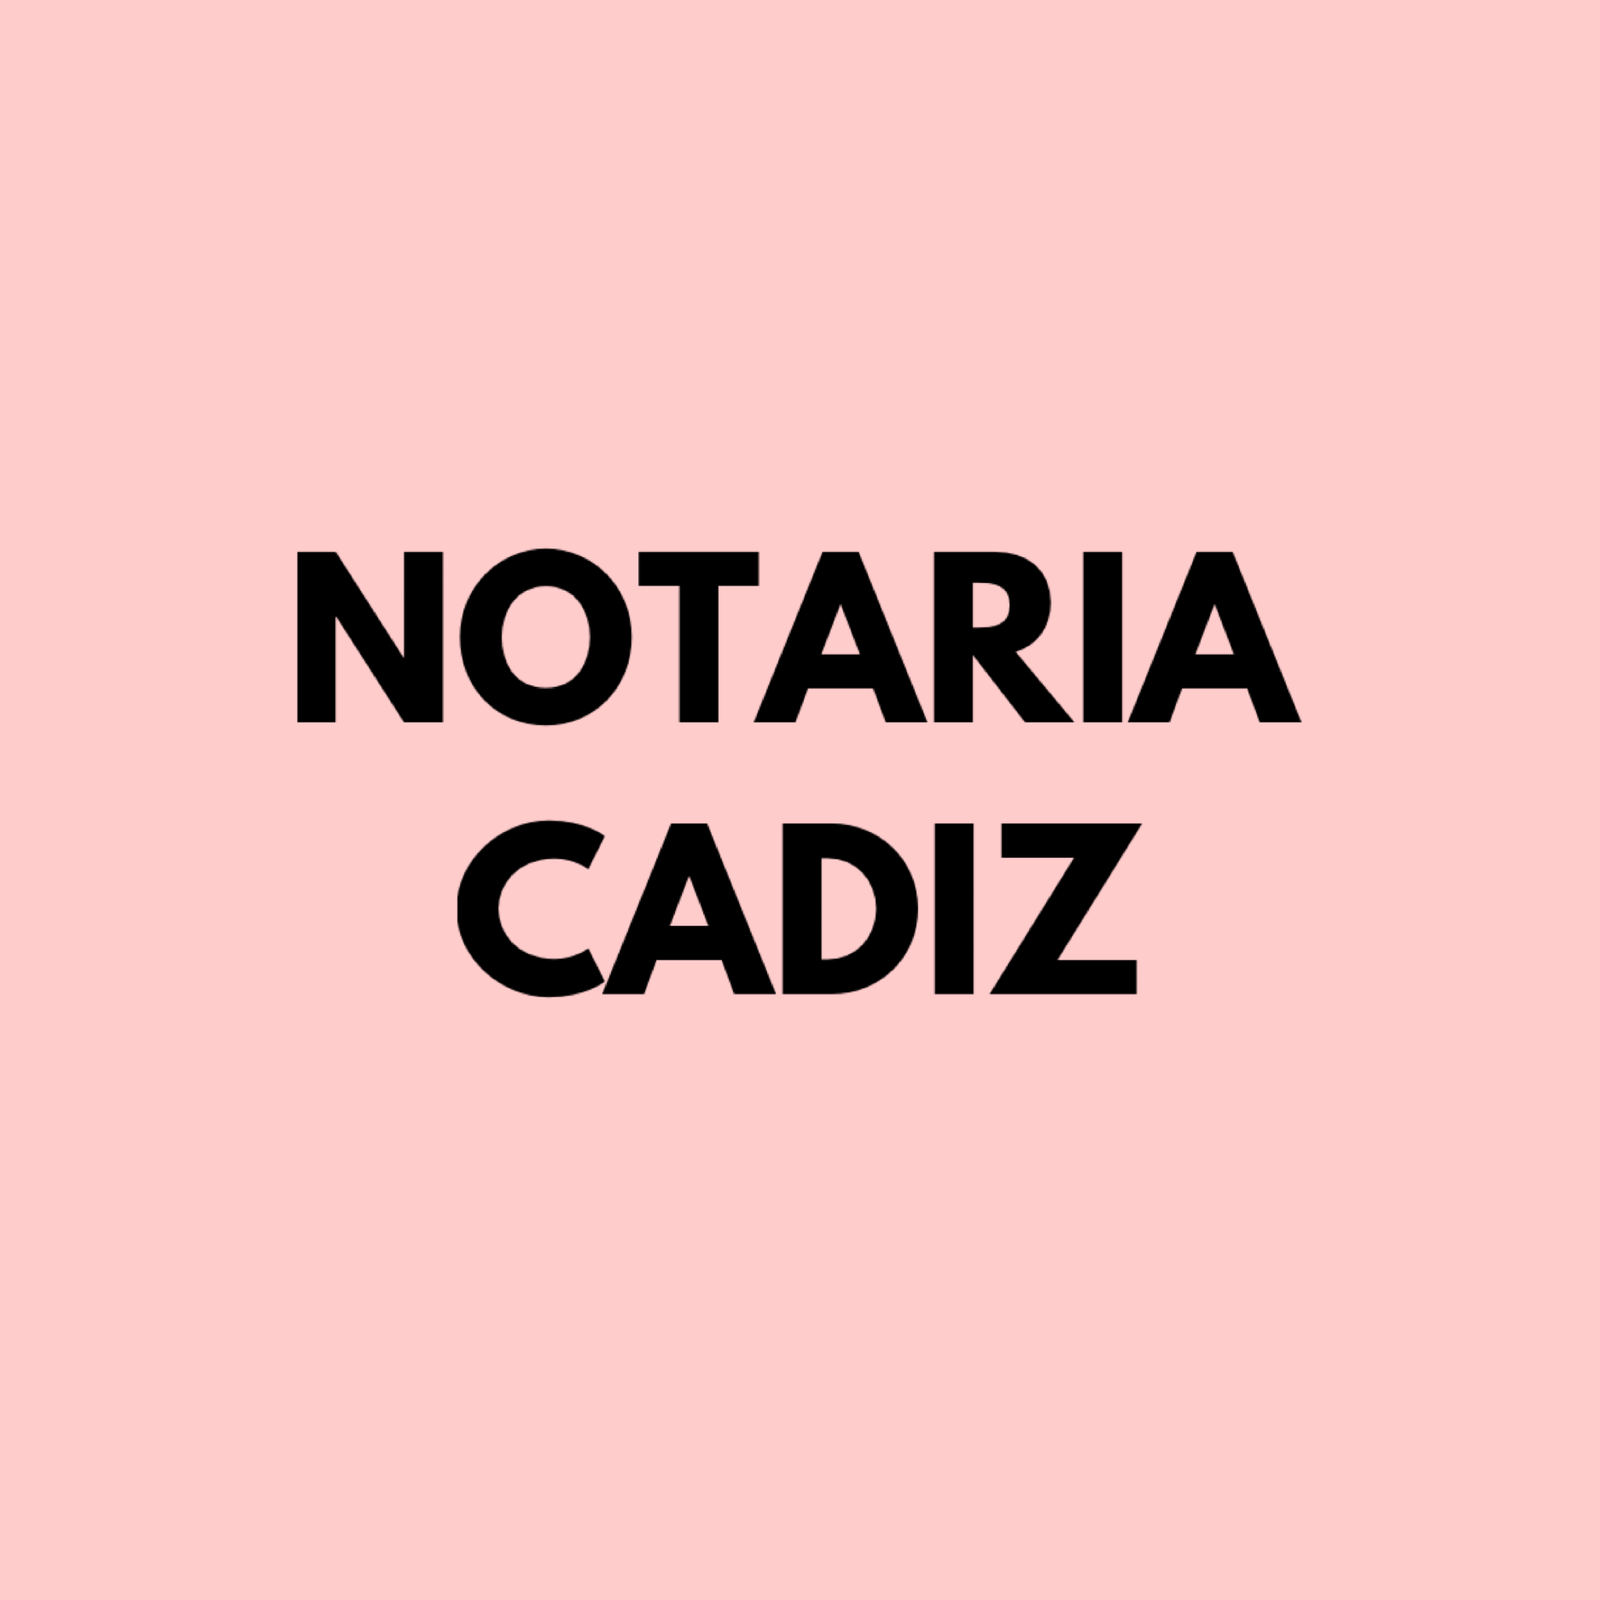 Notarias en Cadiz